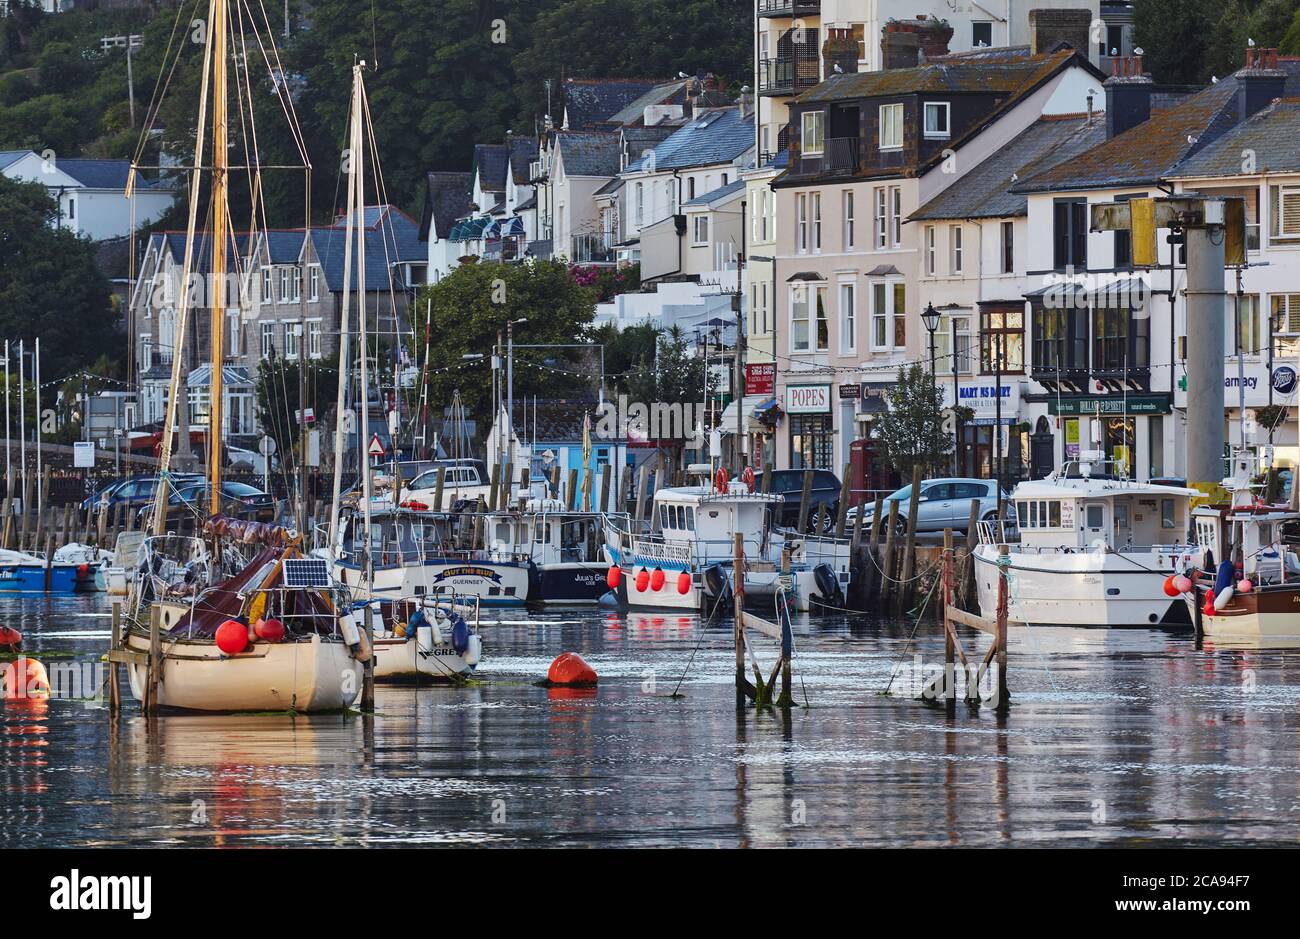 Le port de pêche bien connu de Looe, en plein soleil du matin, sur la côte sud des Cornouailles, Looe, Cornwall, Angleterre, Royaume-Uni, Europe Banque D'Images